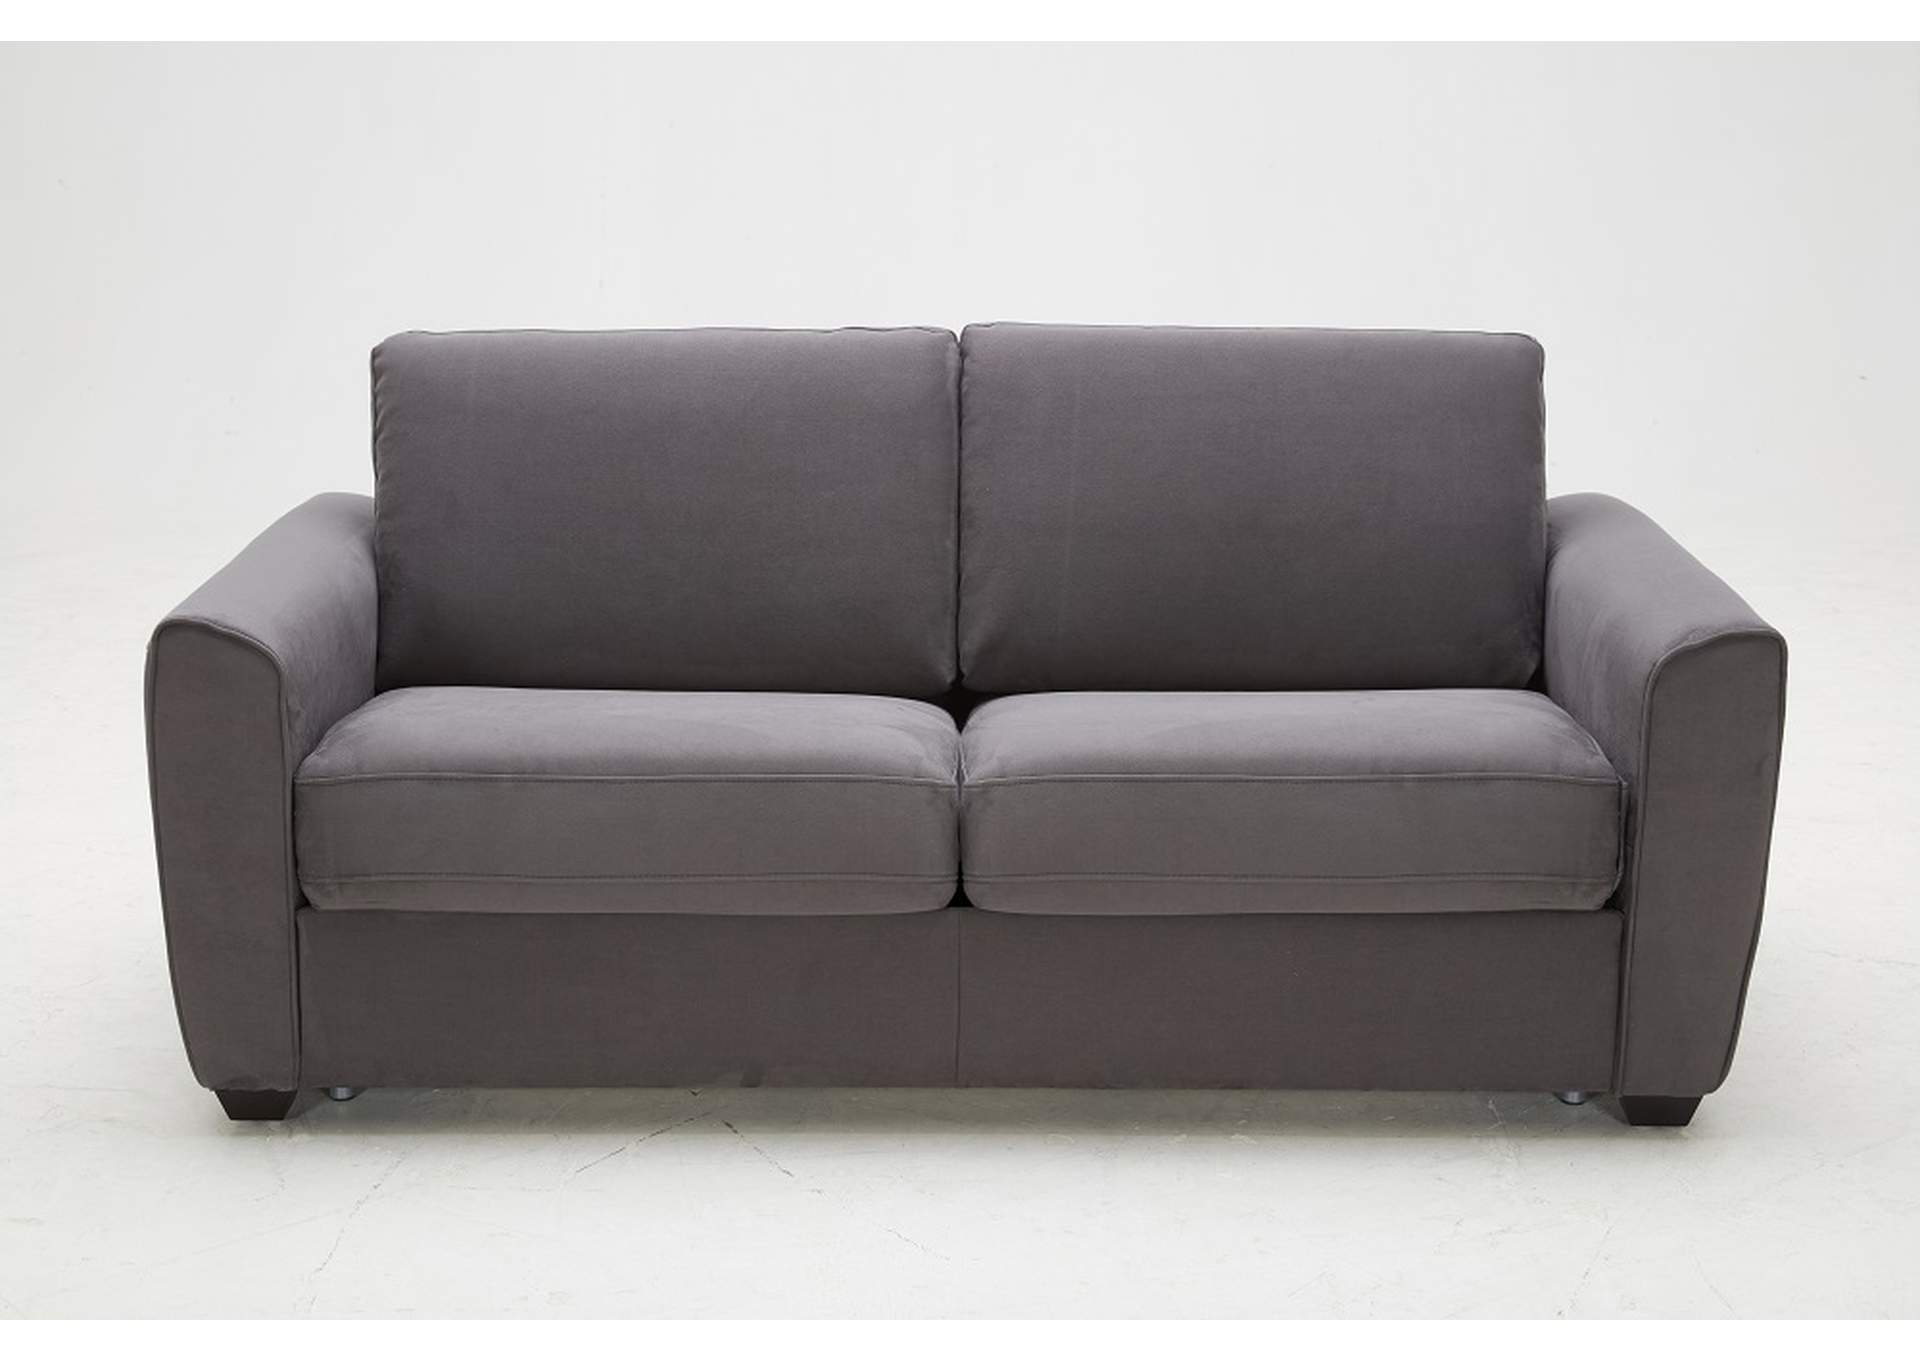 Mono Sofa Bed In Grey Fabric,J&M Furniture